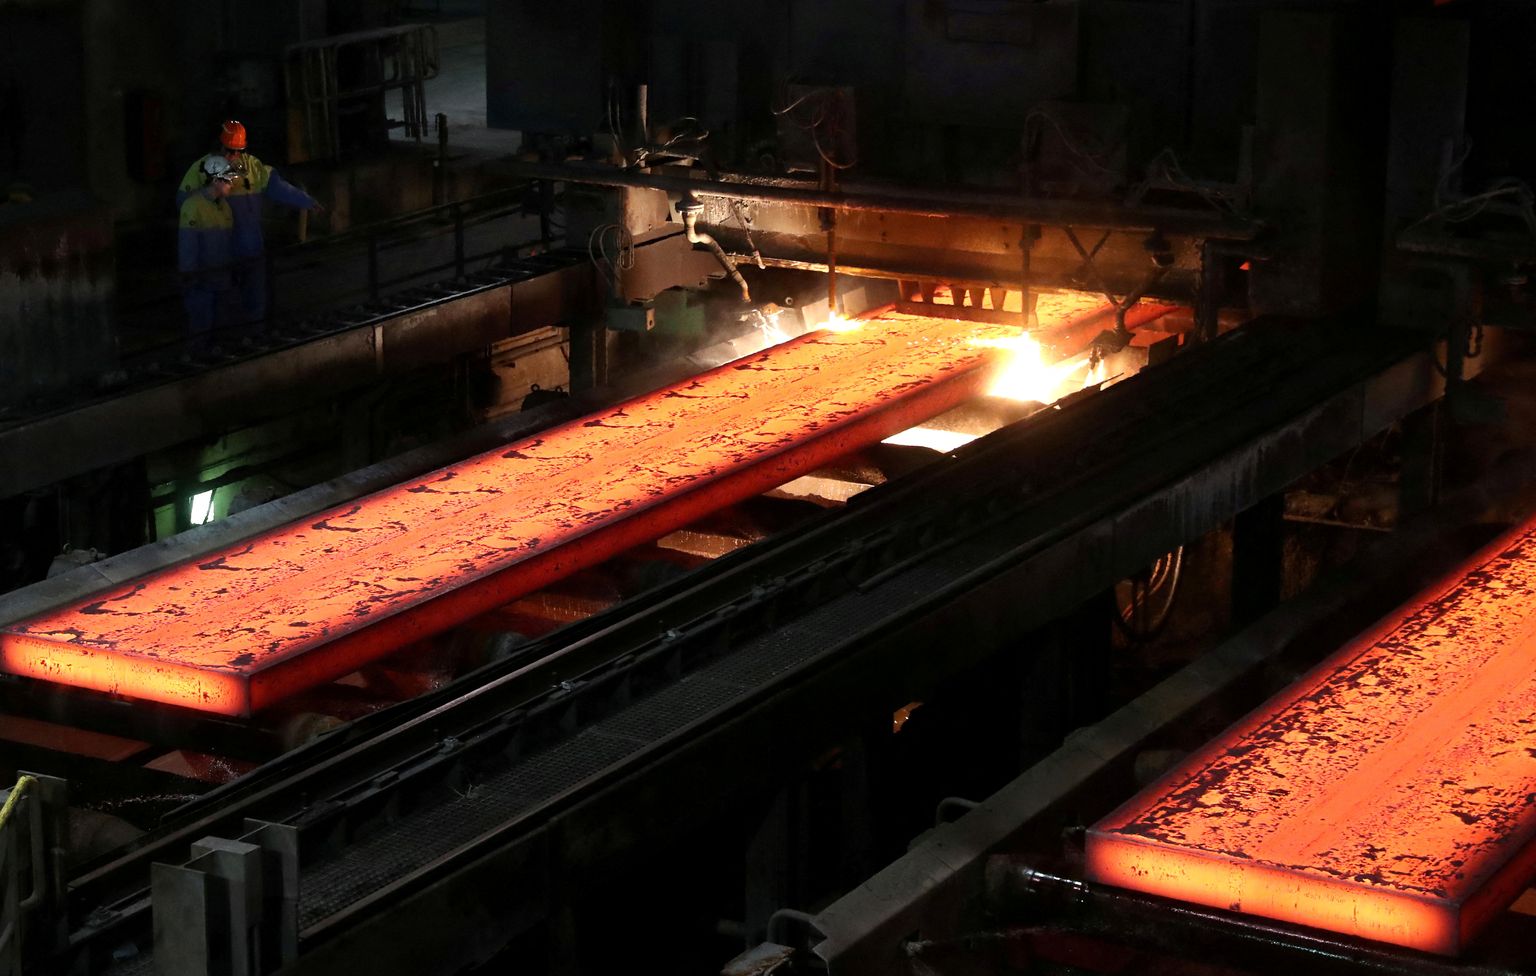 Kuumad alumiinium plaadid Tata terasetööstuses Hollandis, 3. aprill 2019. a.